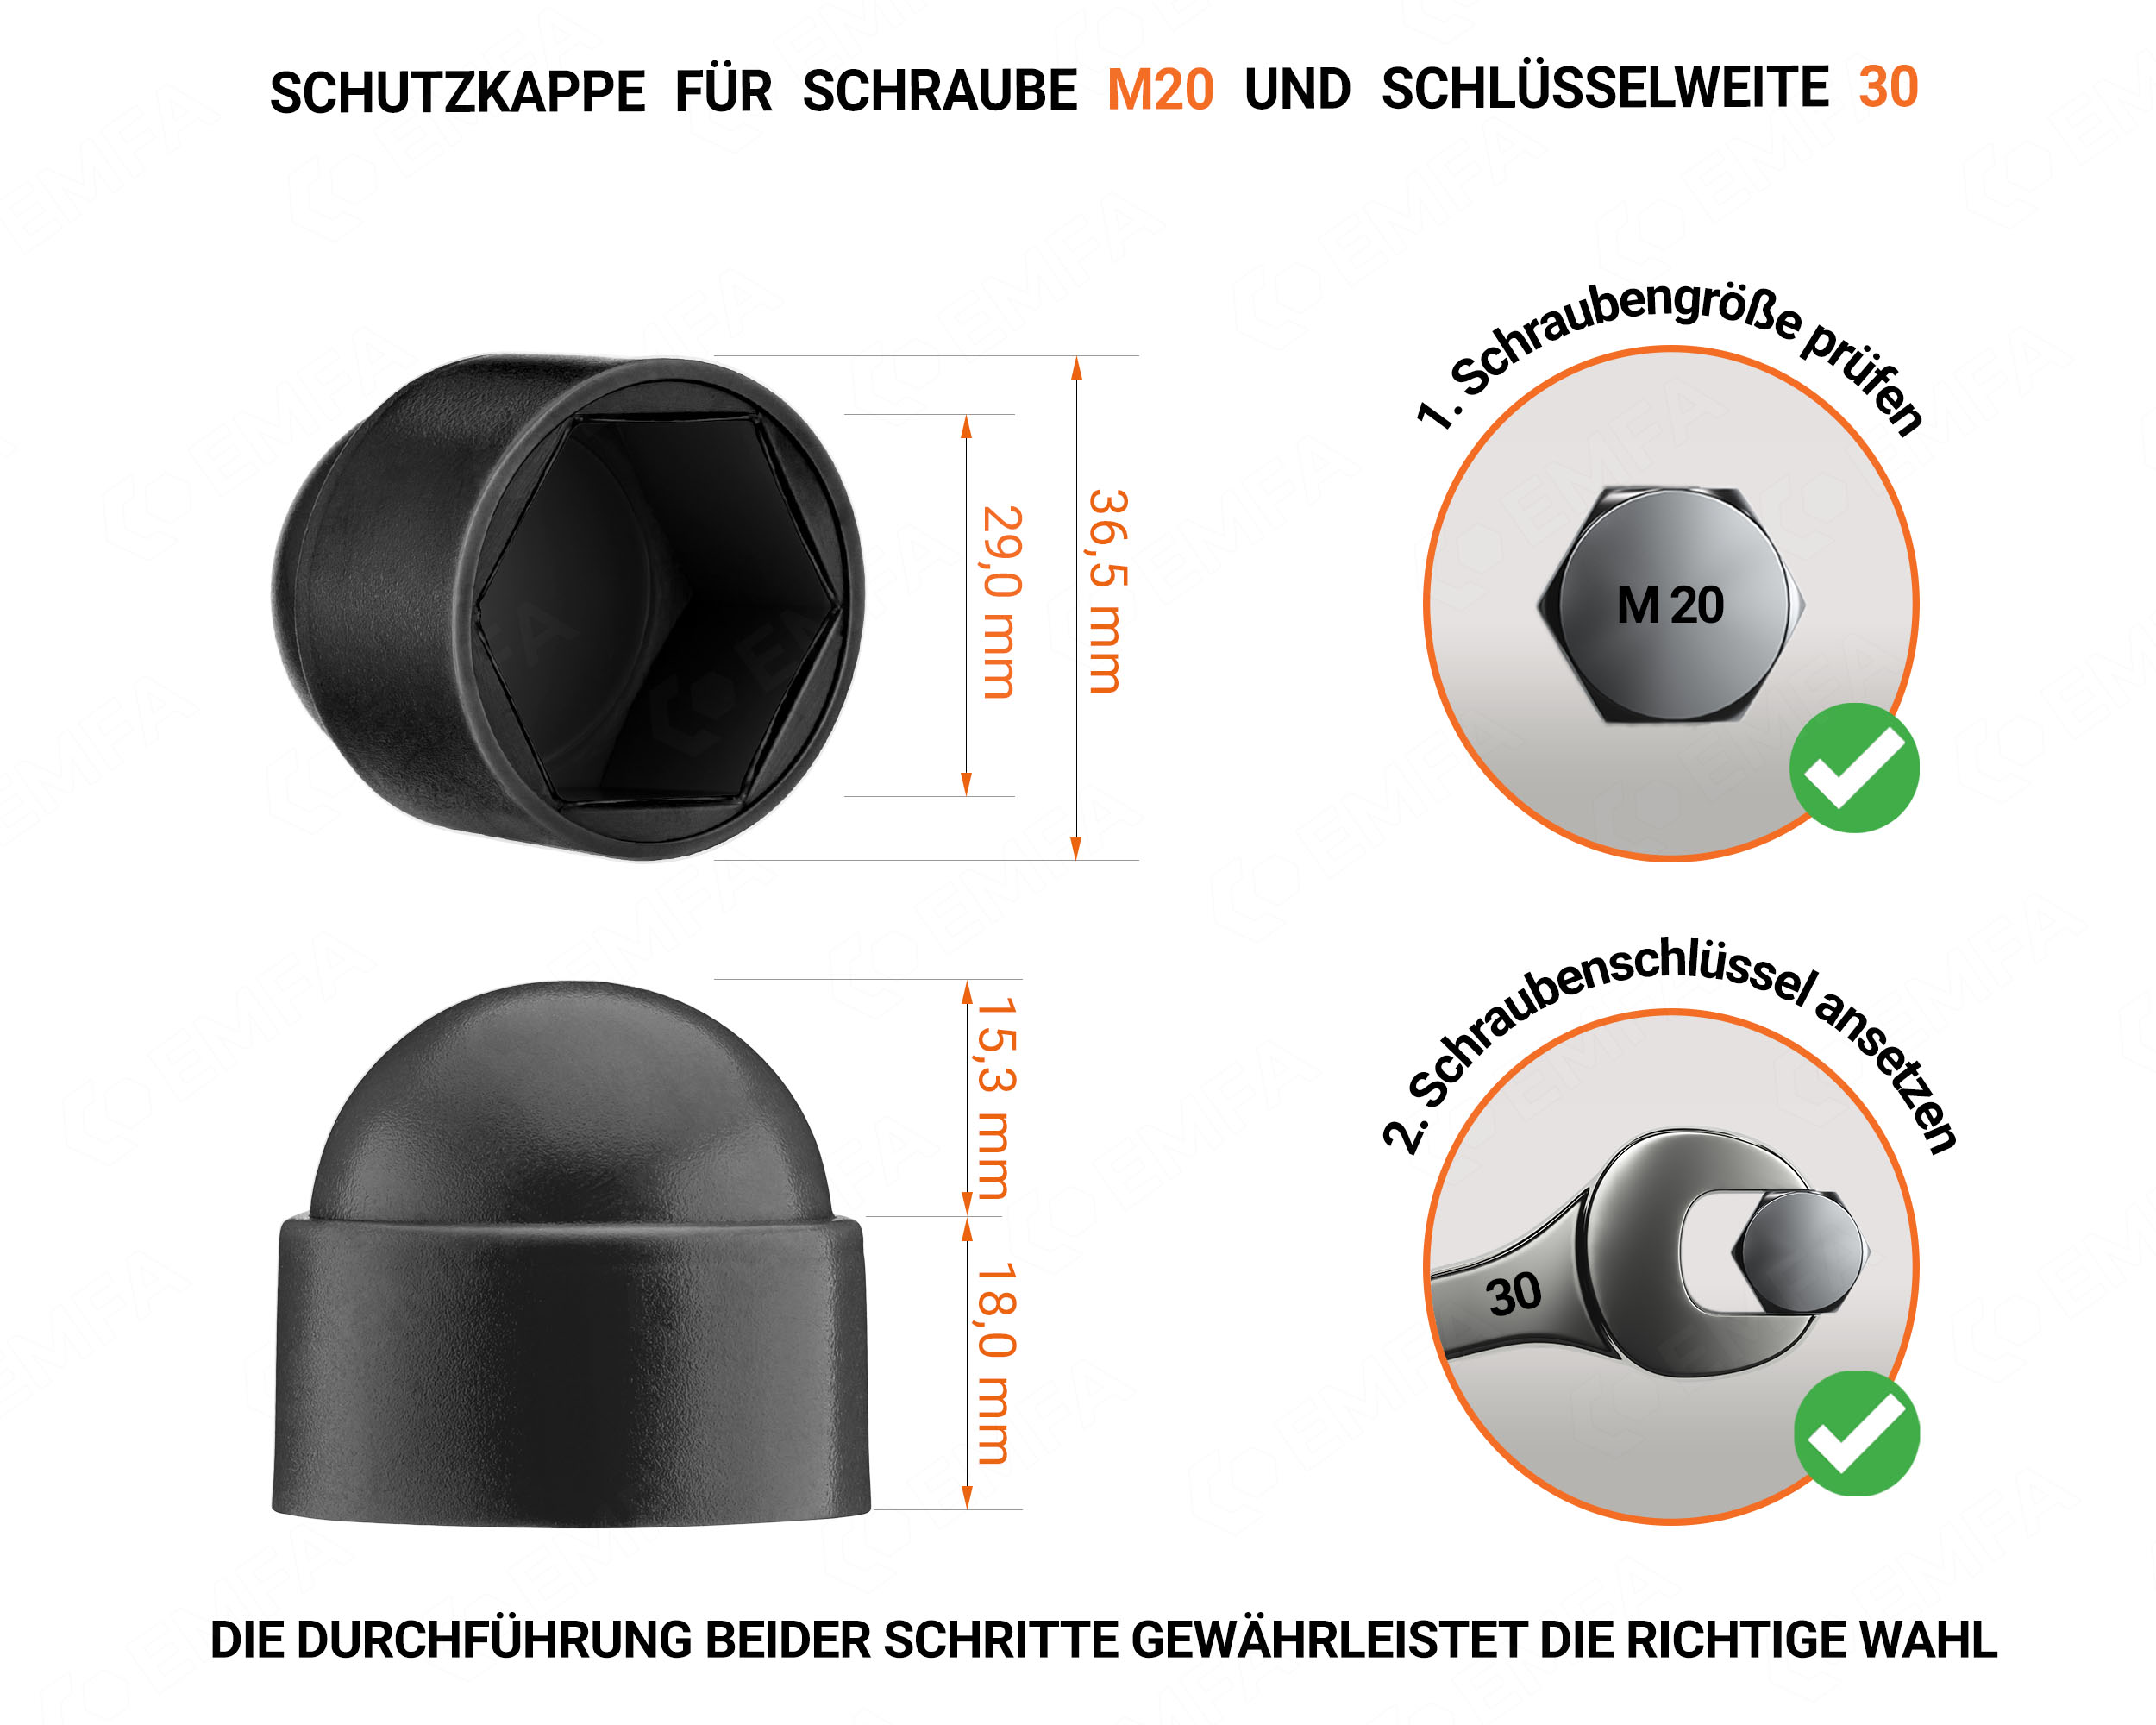 Schwarze Schutzkappen für Schrauben M20 Schlüsselweite 30 mit technischen Abmessungen und Anleitung für korrekte Messung